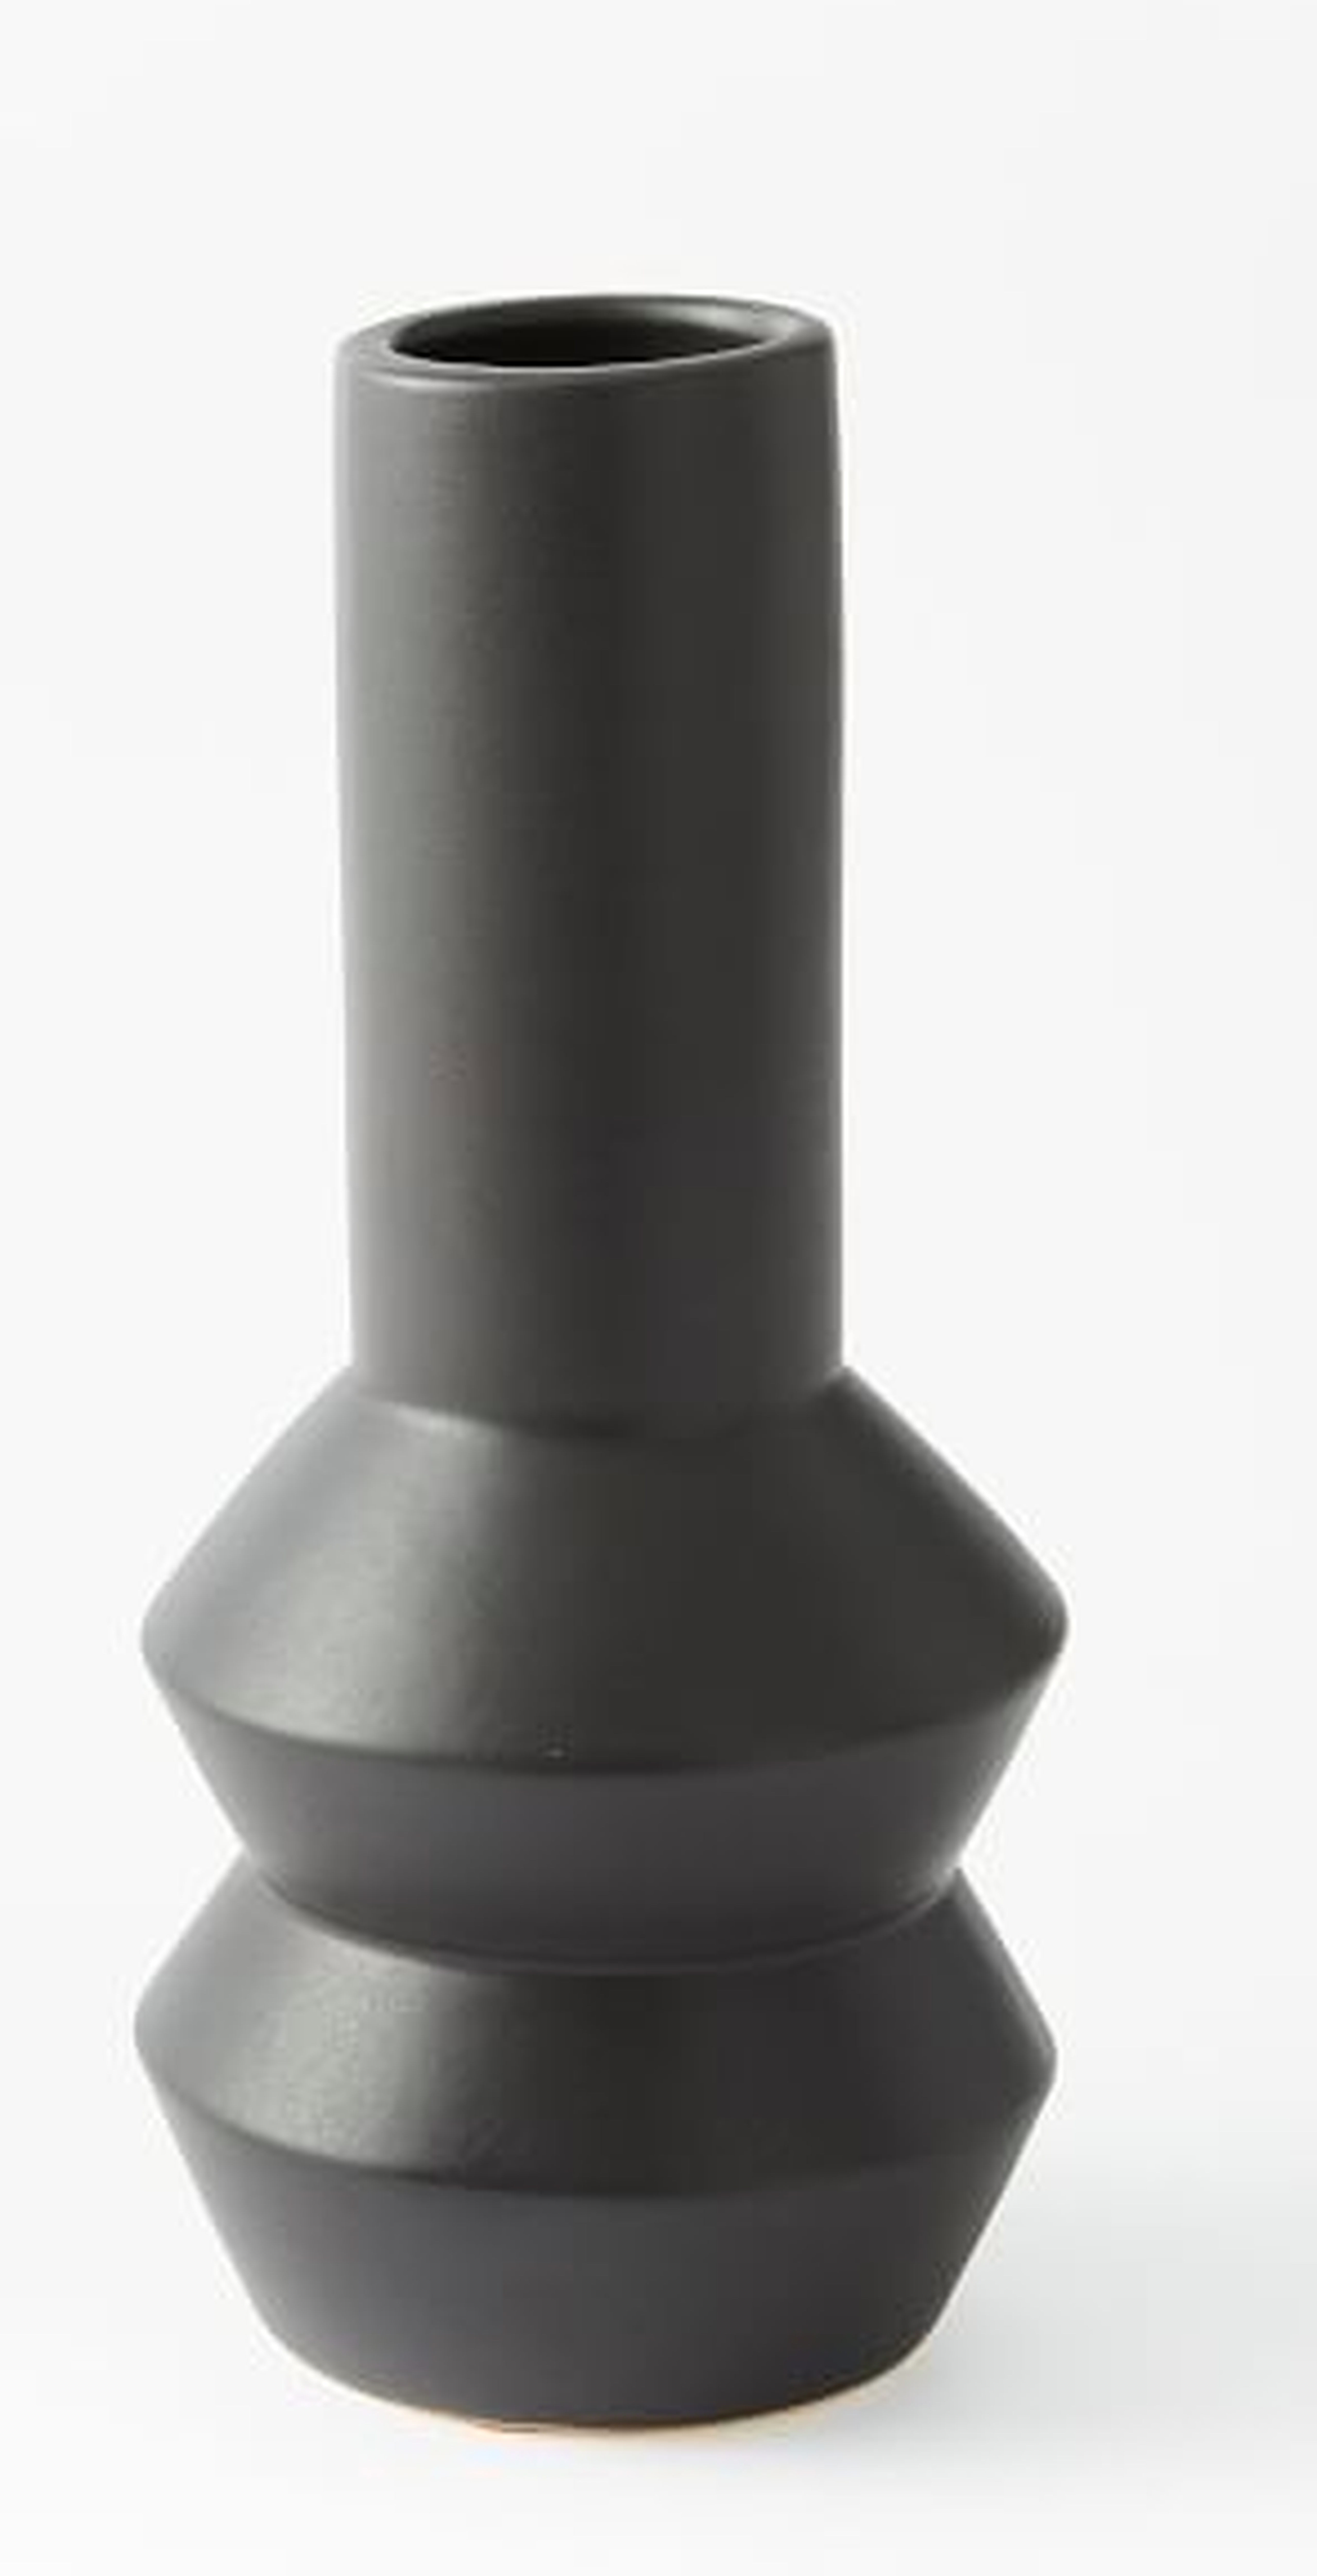 Totem Vases - 12.5" vase - West Elm